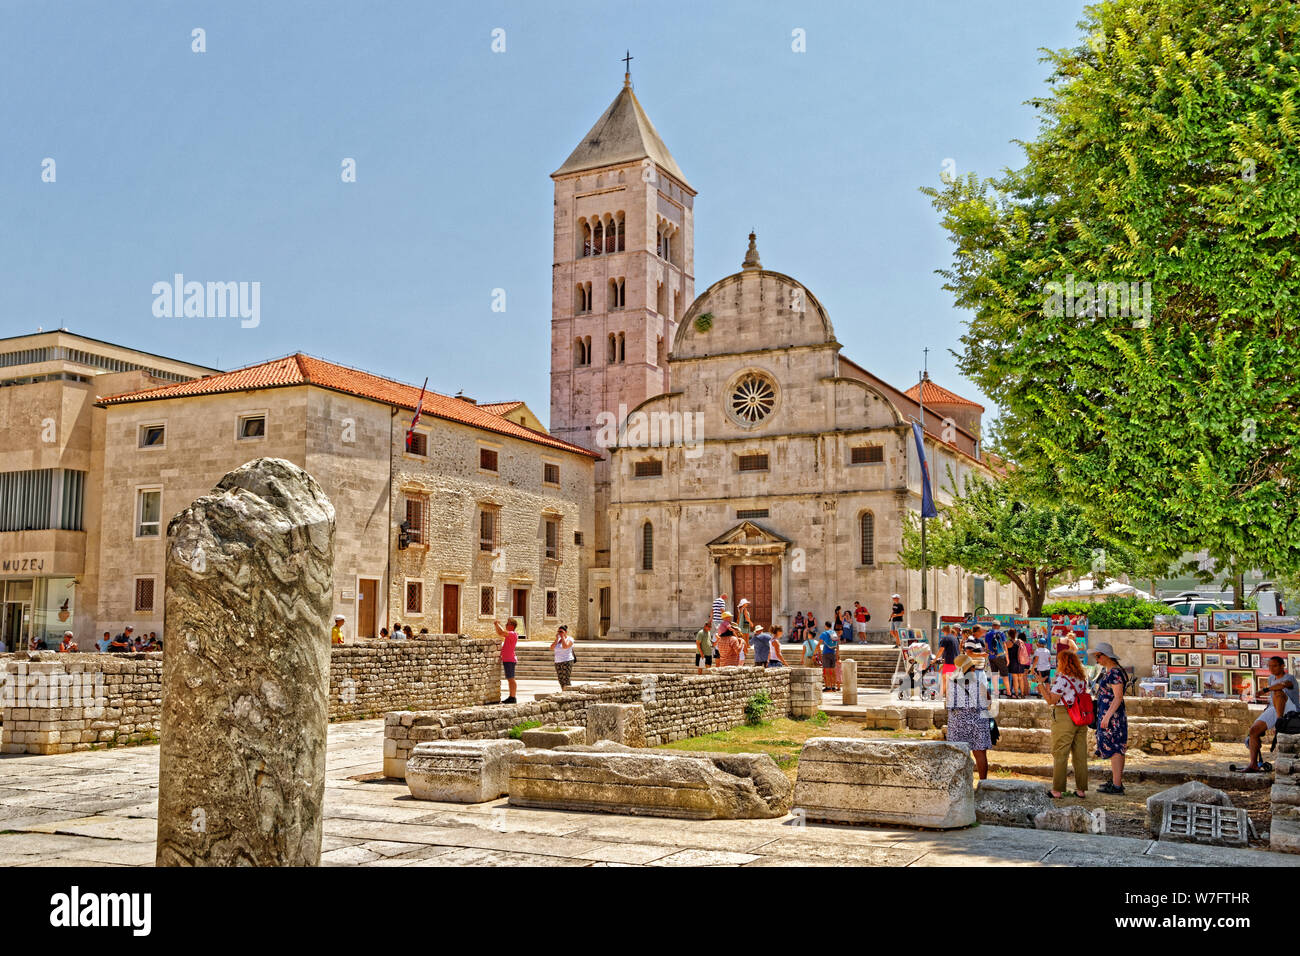 Römische Artefakte Museum und der Glockenturm von St. Anastasia Kathedrale in der Altstadt von Zadar, Kroatien. Stockfoto